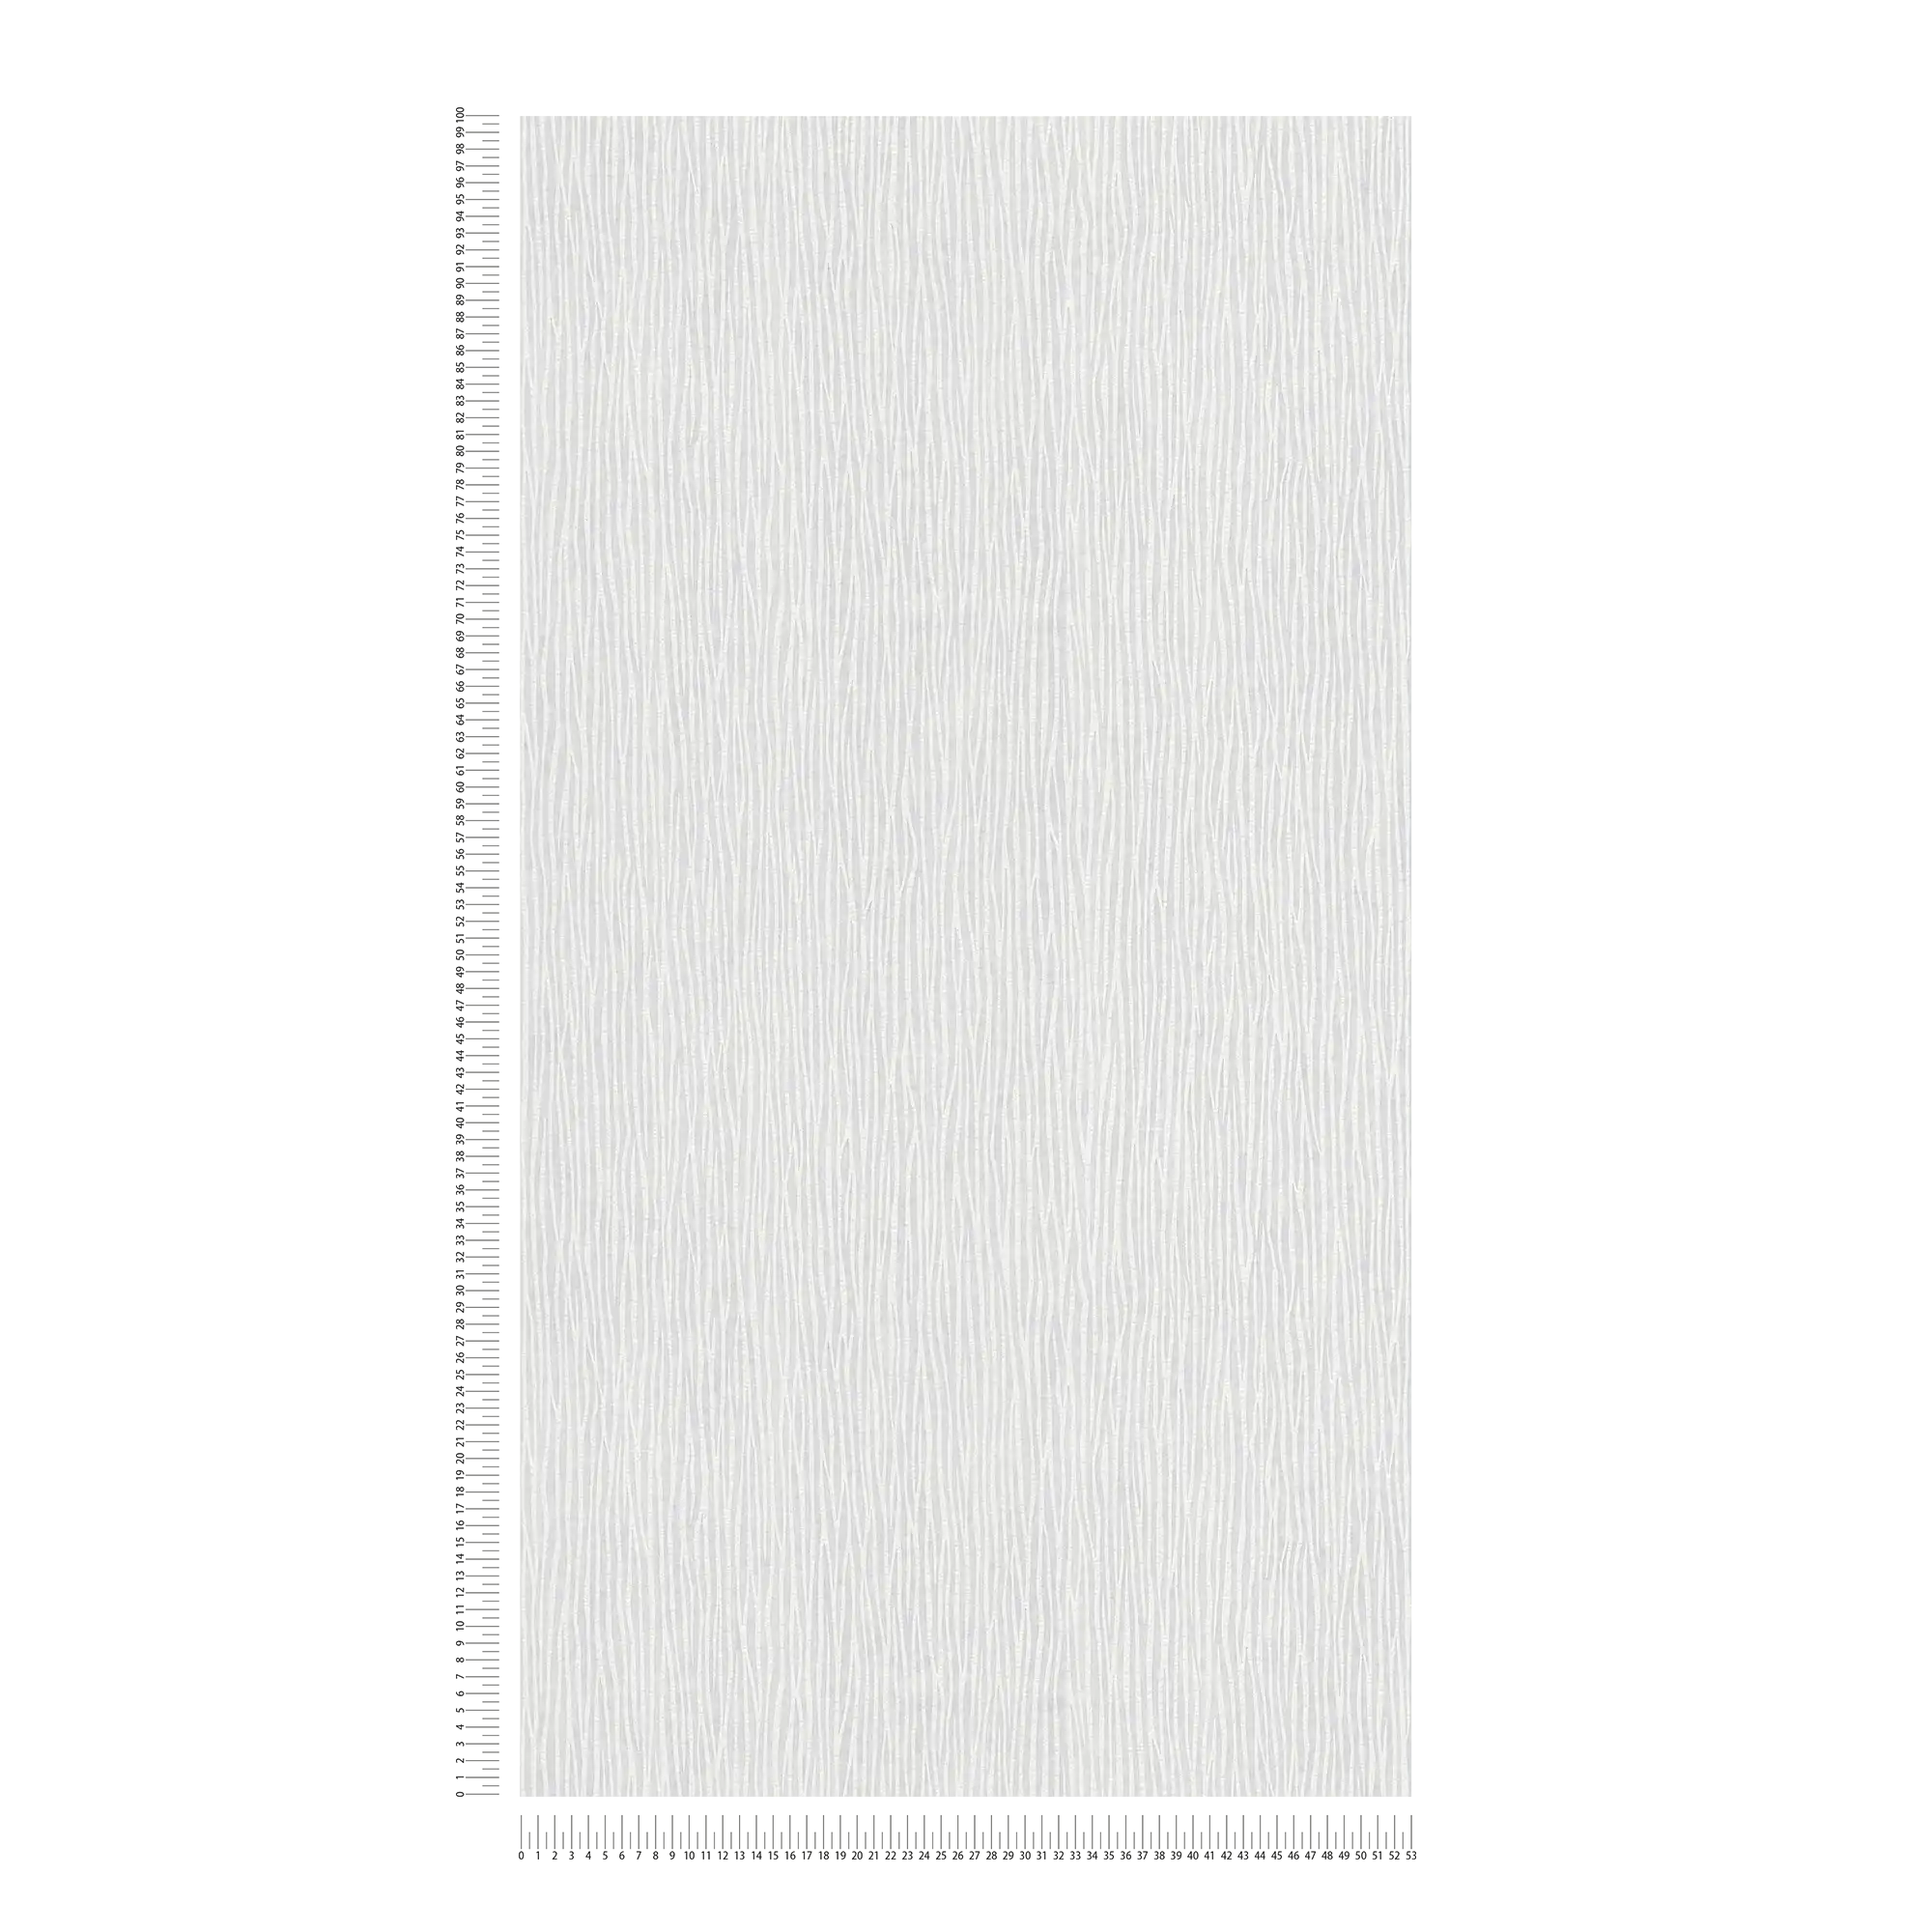             Carta da parati verniciabile in tessuto non tessuto con design a linee naturali
        